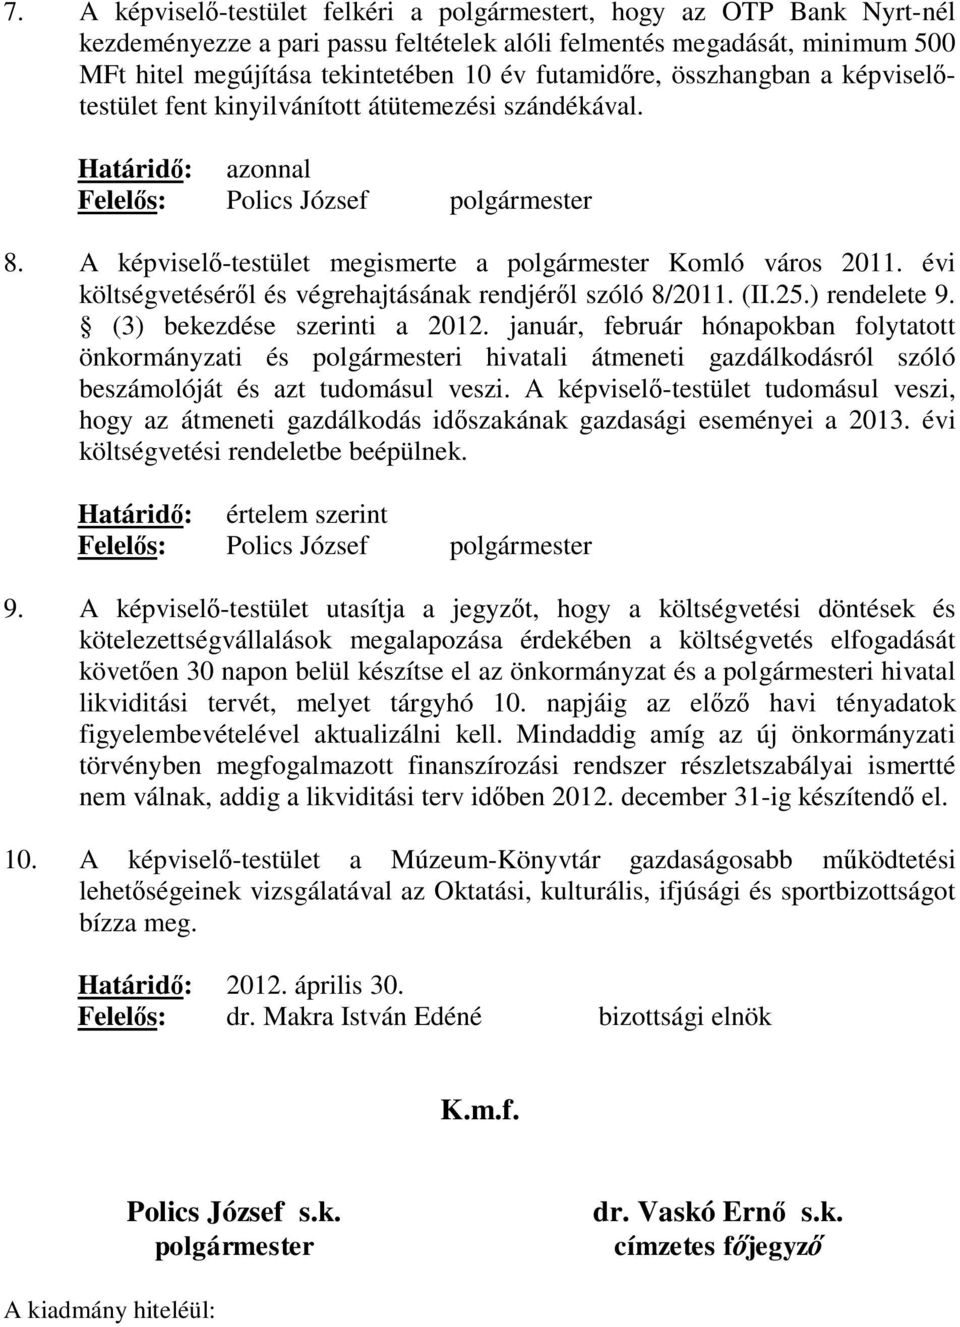 A képviselő-testület megismerte a polgármester Komló város 2011. évi költségvetéséről és végrehajtásának rendjéről szóló 8/2011. (II.25.) rendelete 9. (3) bekezdése szerinti a 2012.